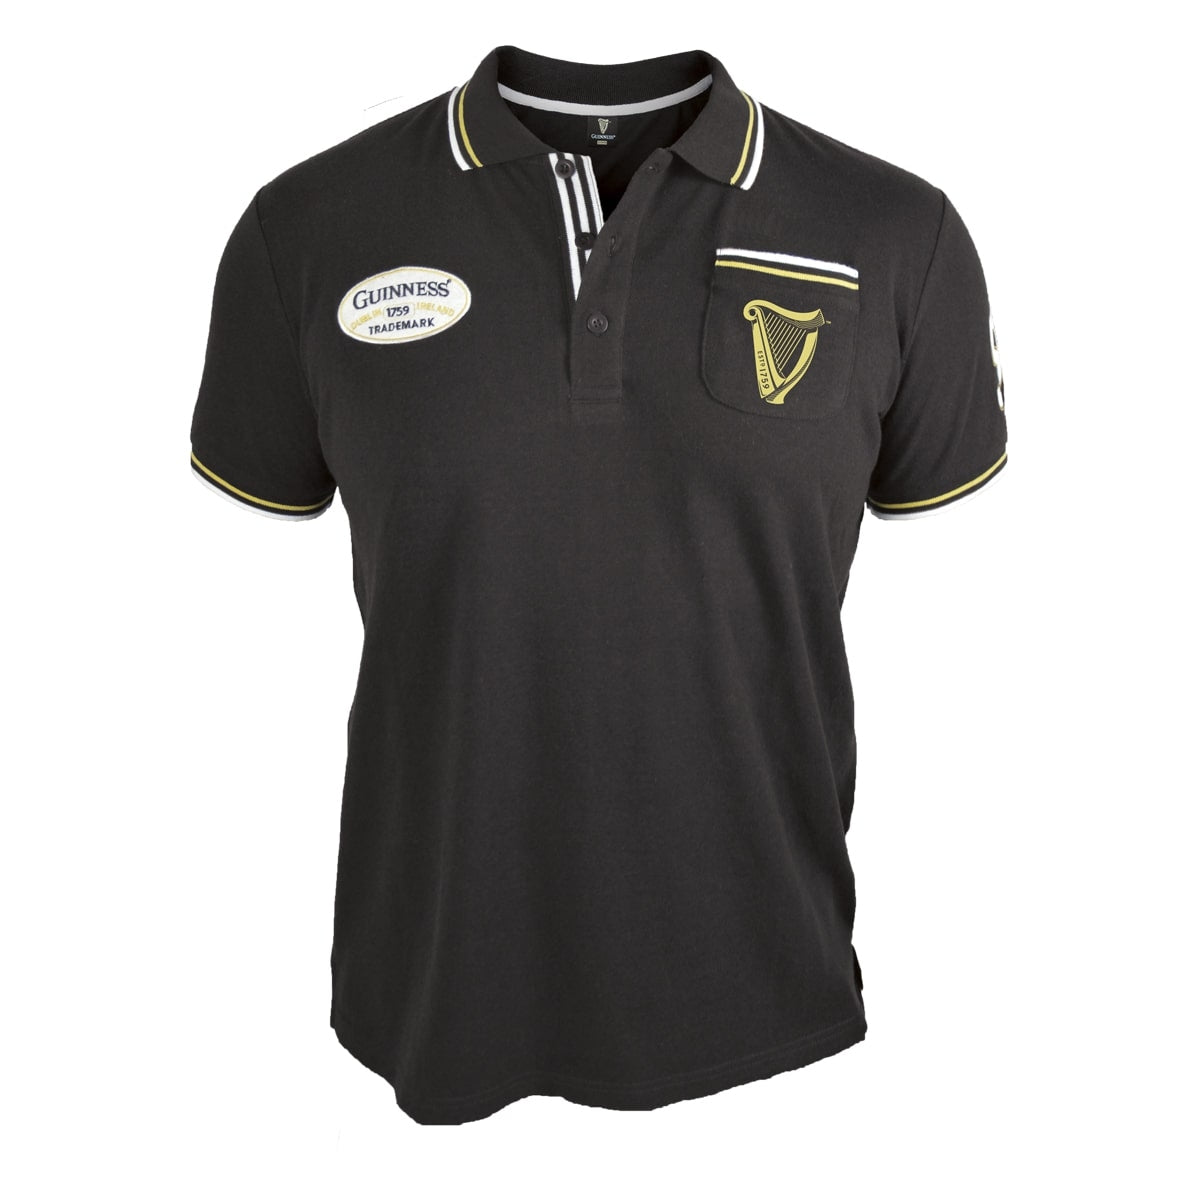 Guinness Black Pique Polo Shirt